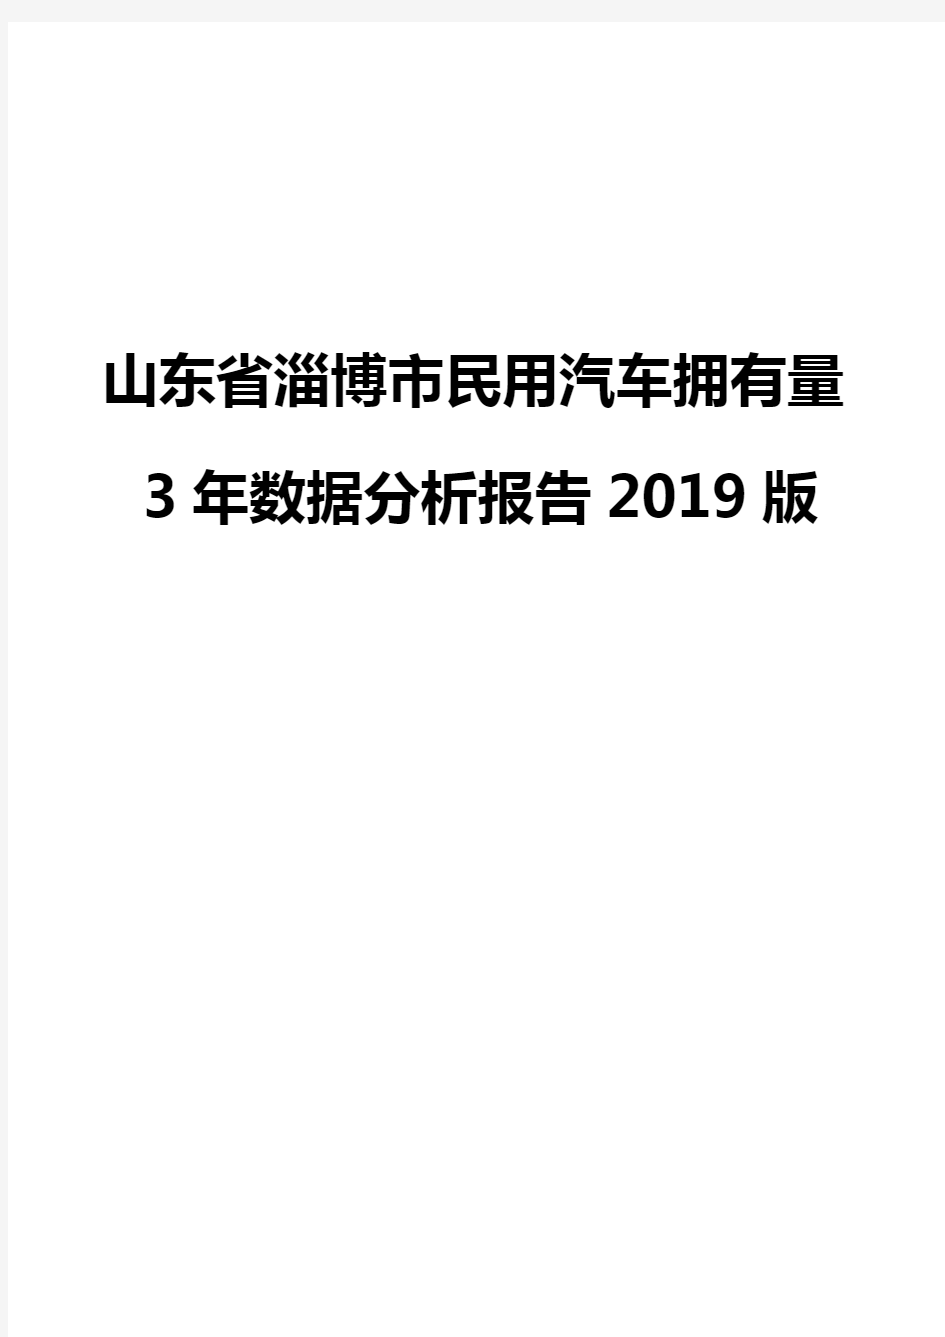 山东省淄博市民用汽车拥有量3年数据分析报告2019版